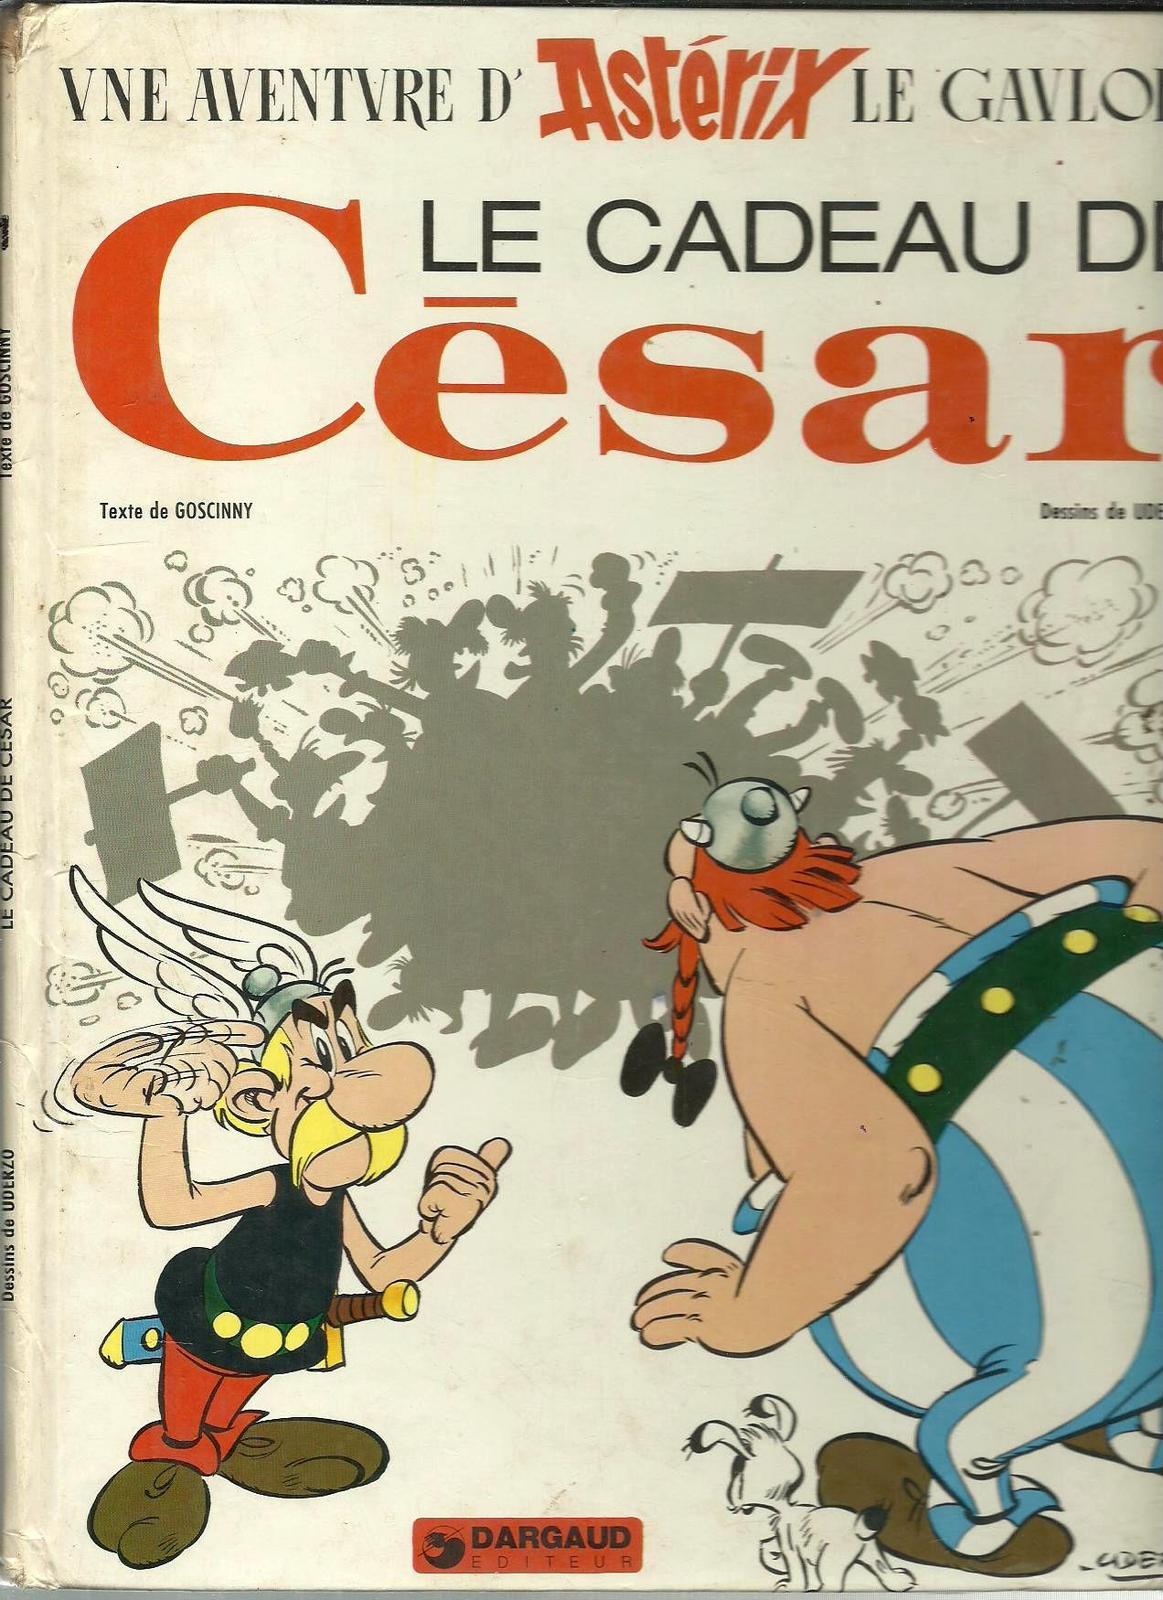 Le Cadeau de César (French language, 1974, Dargaud)